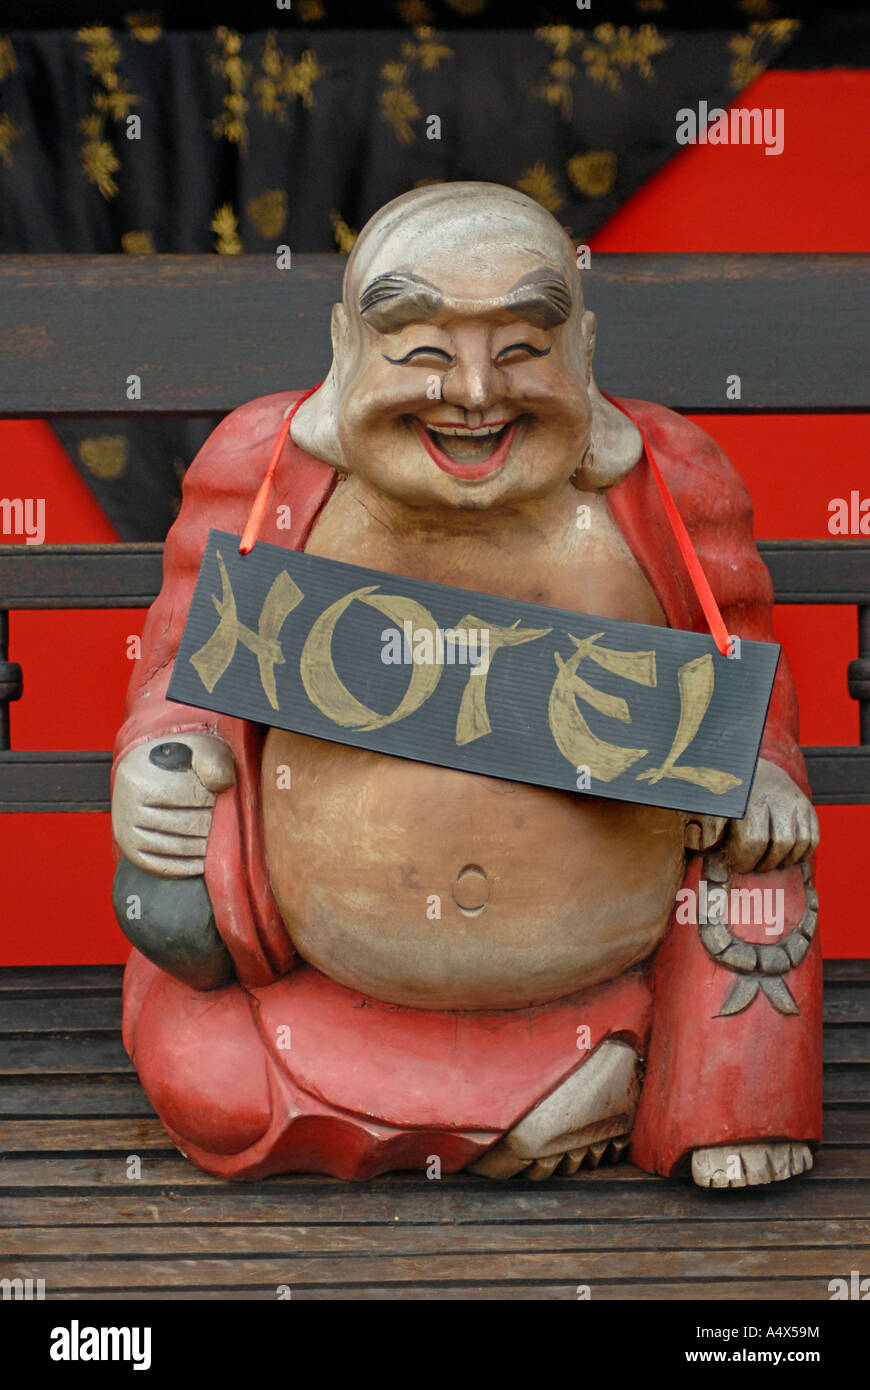 Glücklich lachende Buddhist wie Statue mit einem Schild Werbung HOTEL eines der sieben glücklichen Götter Koh Samui Thailand Stockfoto